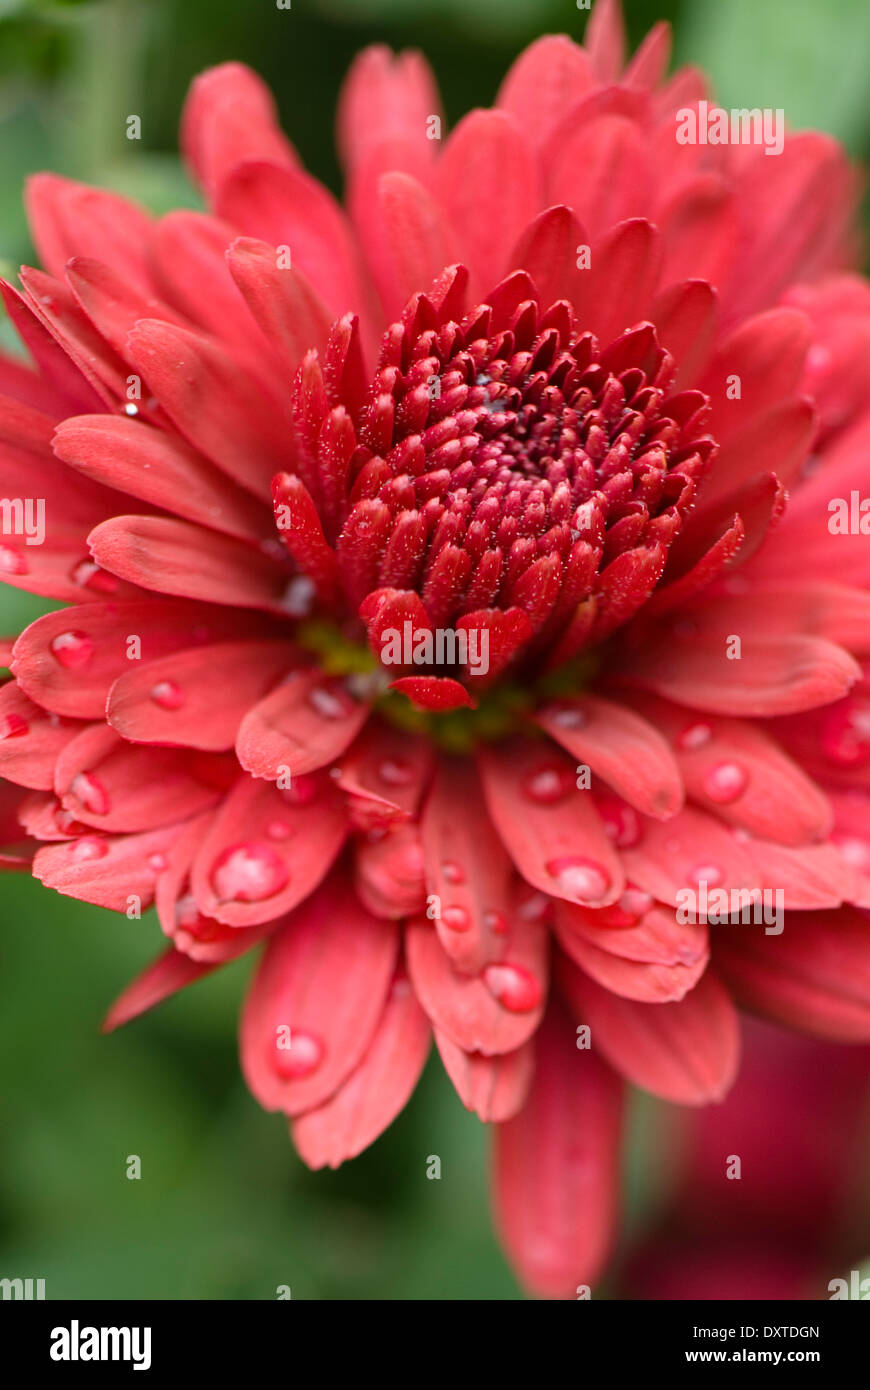 Fiore di gala immagini e fotografie stock ad alta risoluzione - Alamy